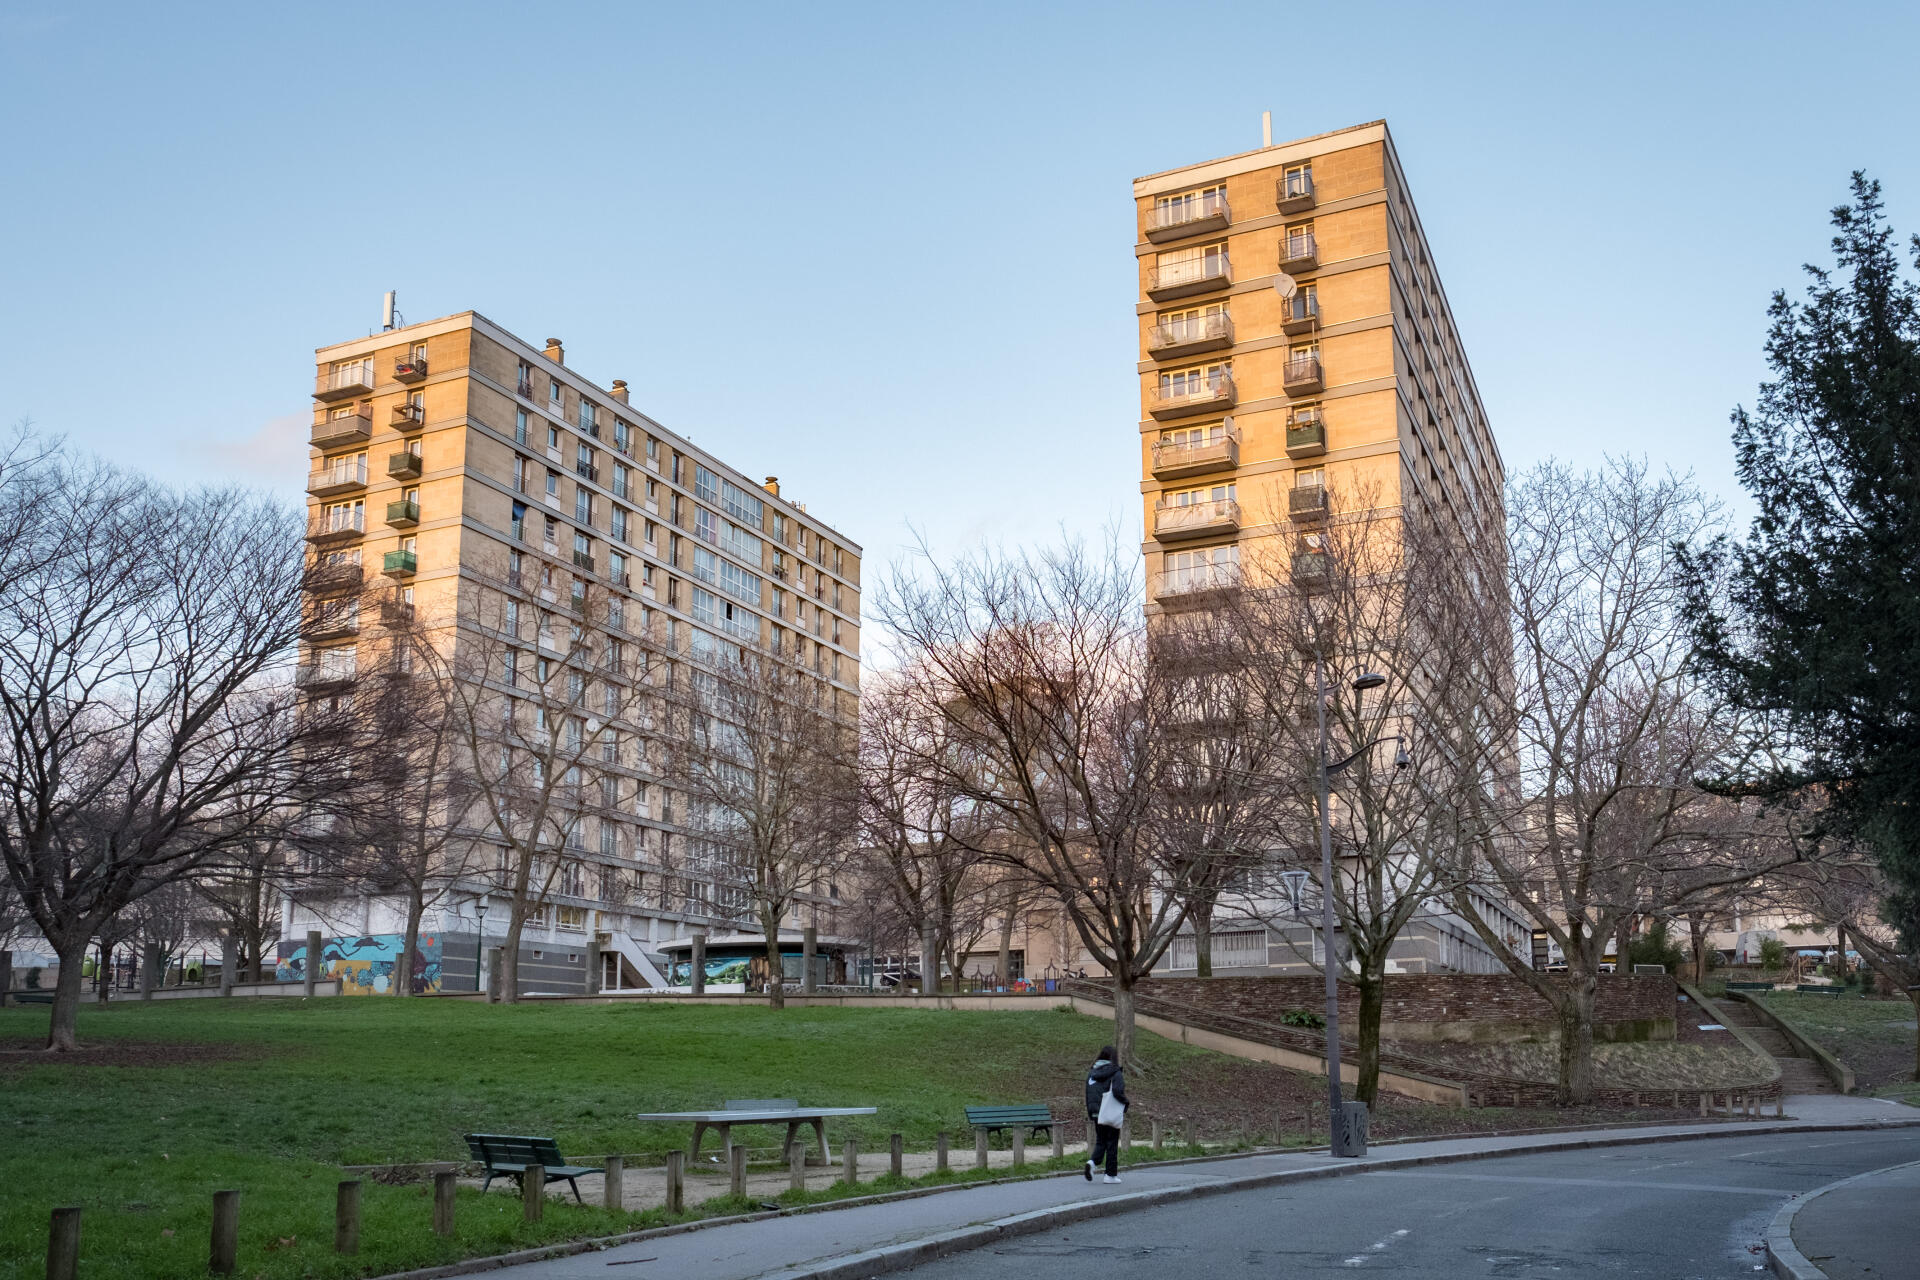 La cité Python-Duvernois, dans le 20e arrondissement de Paris, est un ensemble de logements sociaux où vivent près de 2 000 personnes. C’est un des quartiers les plus pauvres de la capitale.